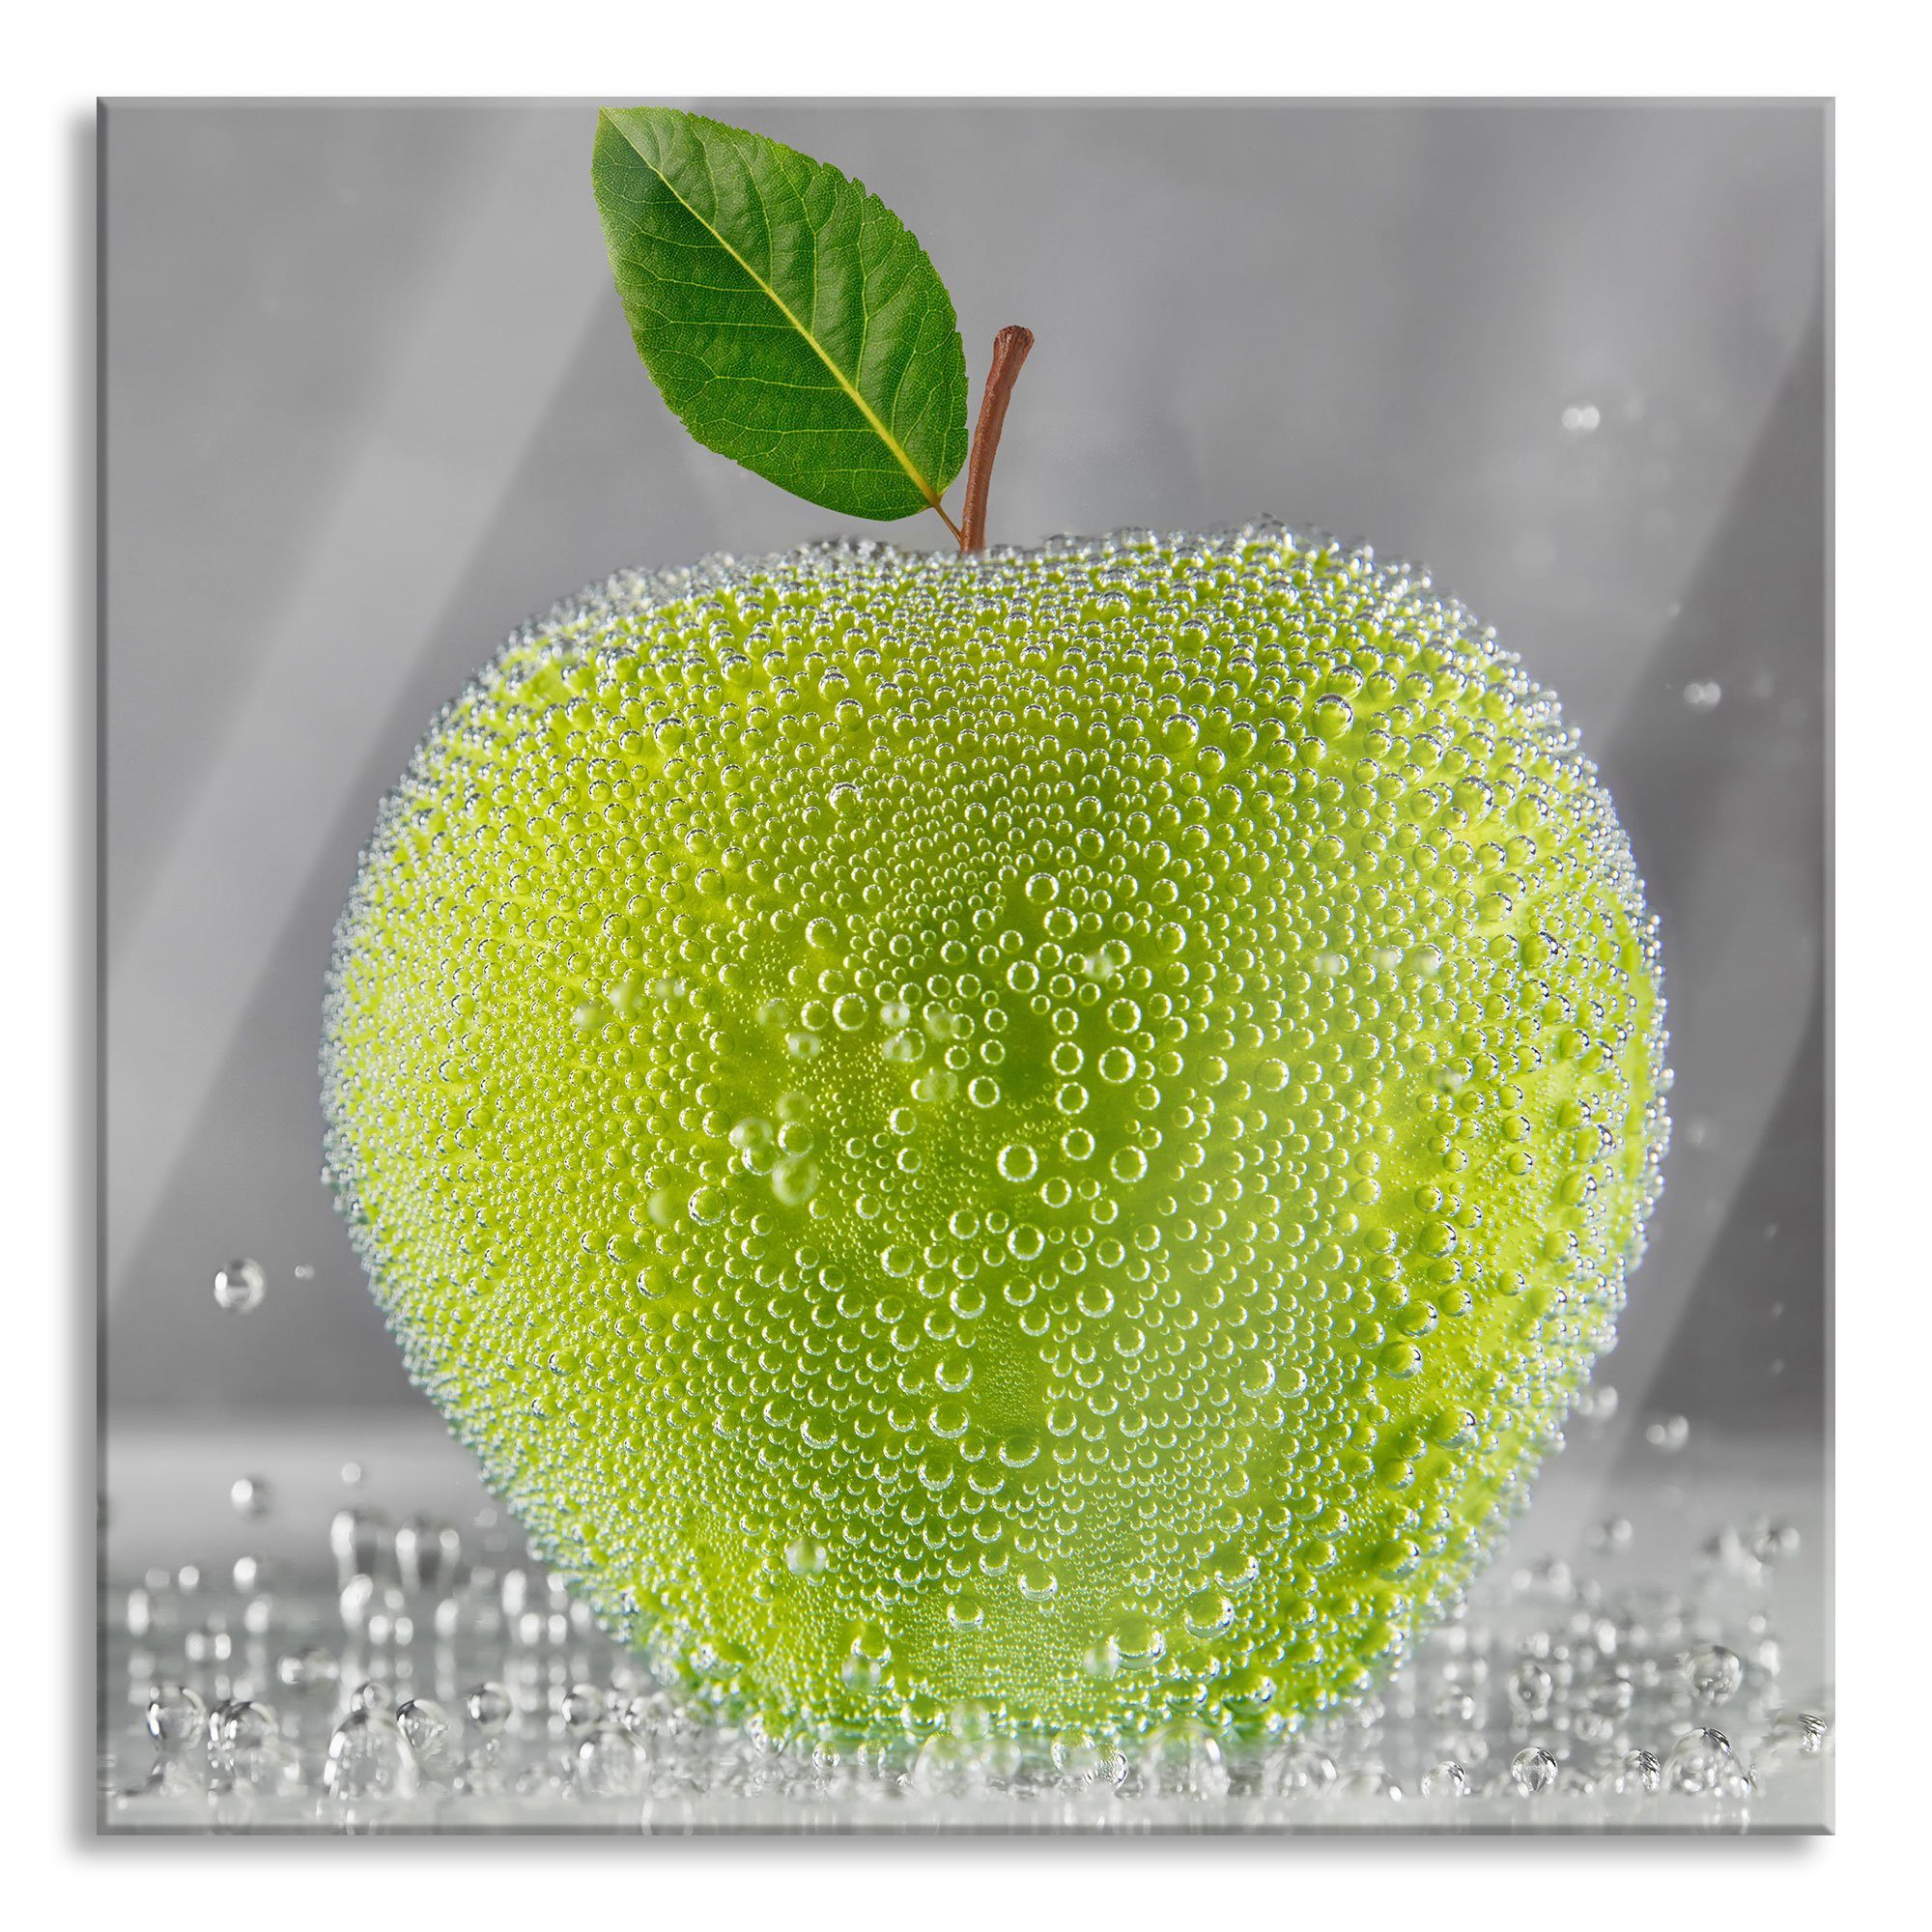 Pixxprint Glasbild Grüner leckerer Apfel im Wasser, Grüner leckerer Apfel im Wasser (1 St), Glasbild aus Echtglas, inkl. Aufhängungen und Abstandshalter